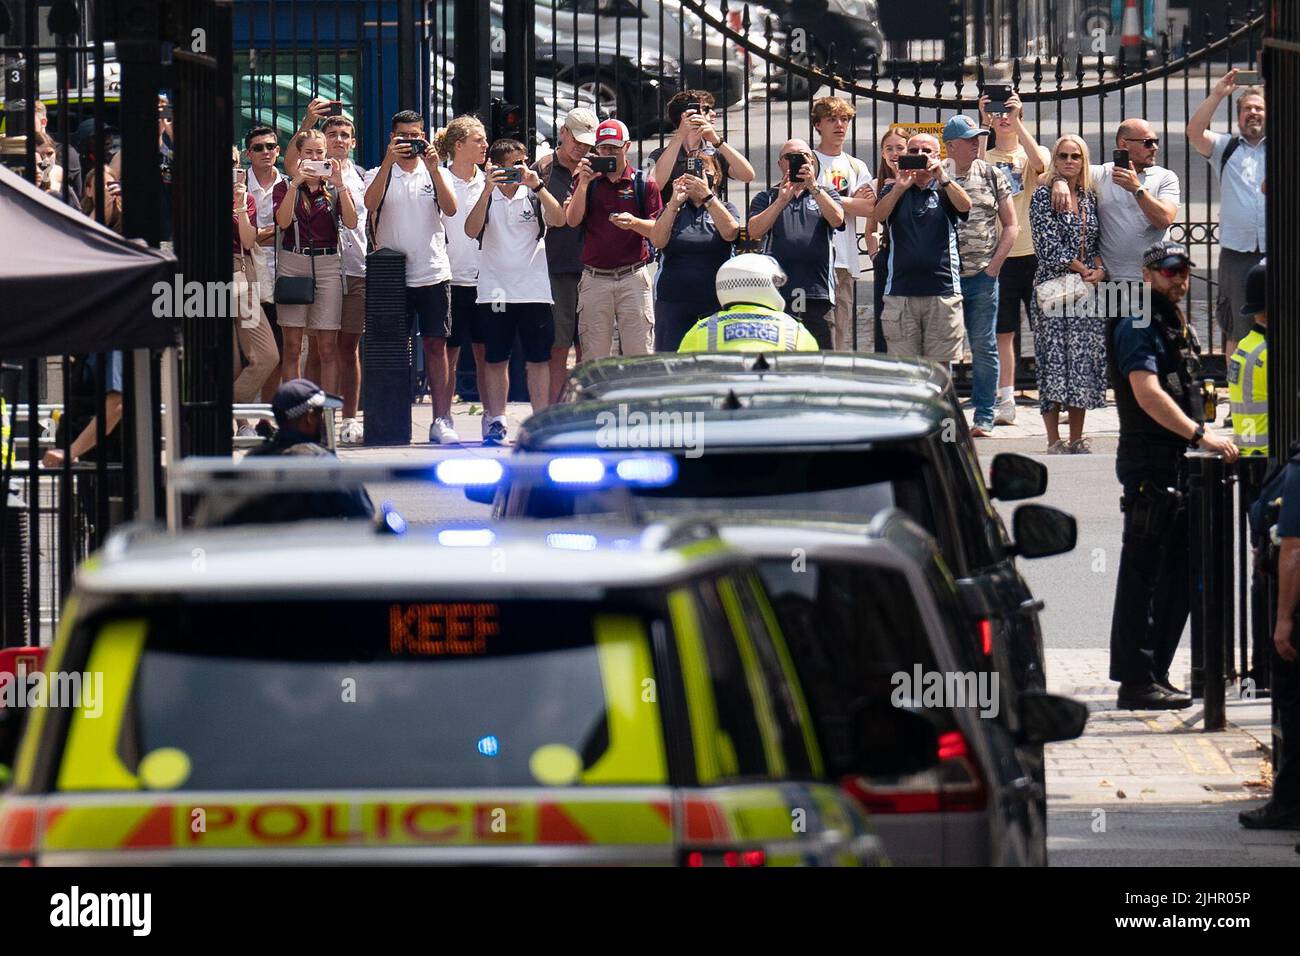 Touristen sehen sich an, wie die Autokolonne von Premierminister Boris Johnson die Downing Street 10, Westminster, London, verlässt, um an seinen letzten geplanten Fragen des Premierministers im Parlament teilzunehmen. Bilddatum: Mittwoch, 20. Juli 2022. Stockfoto